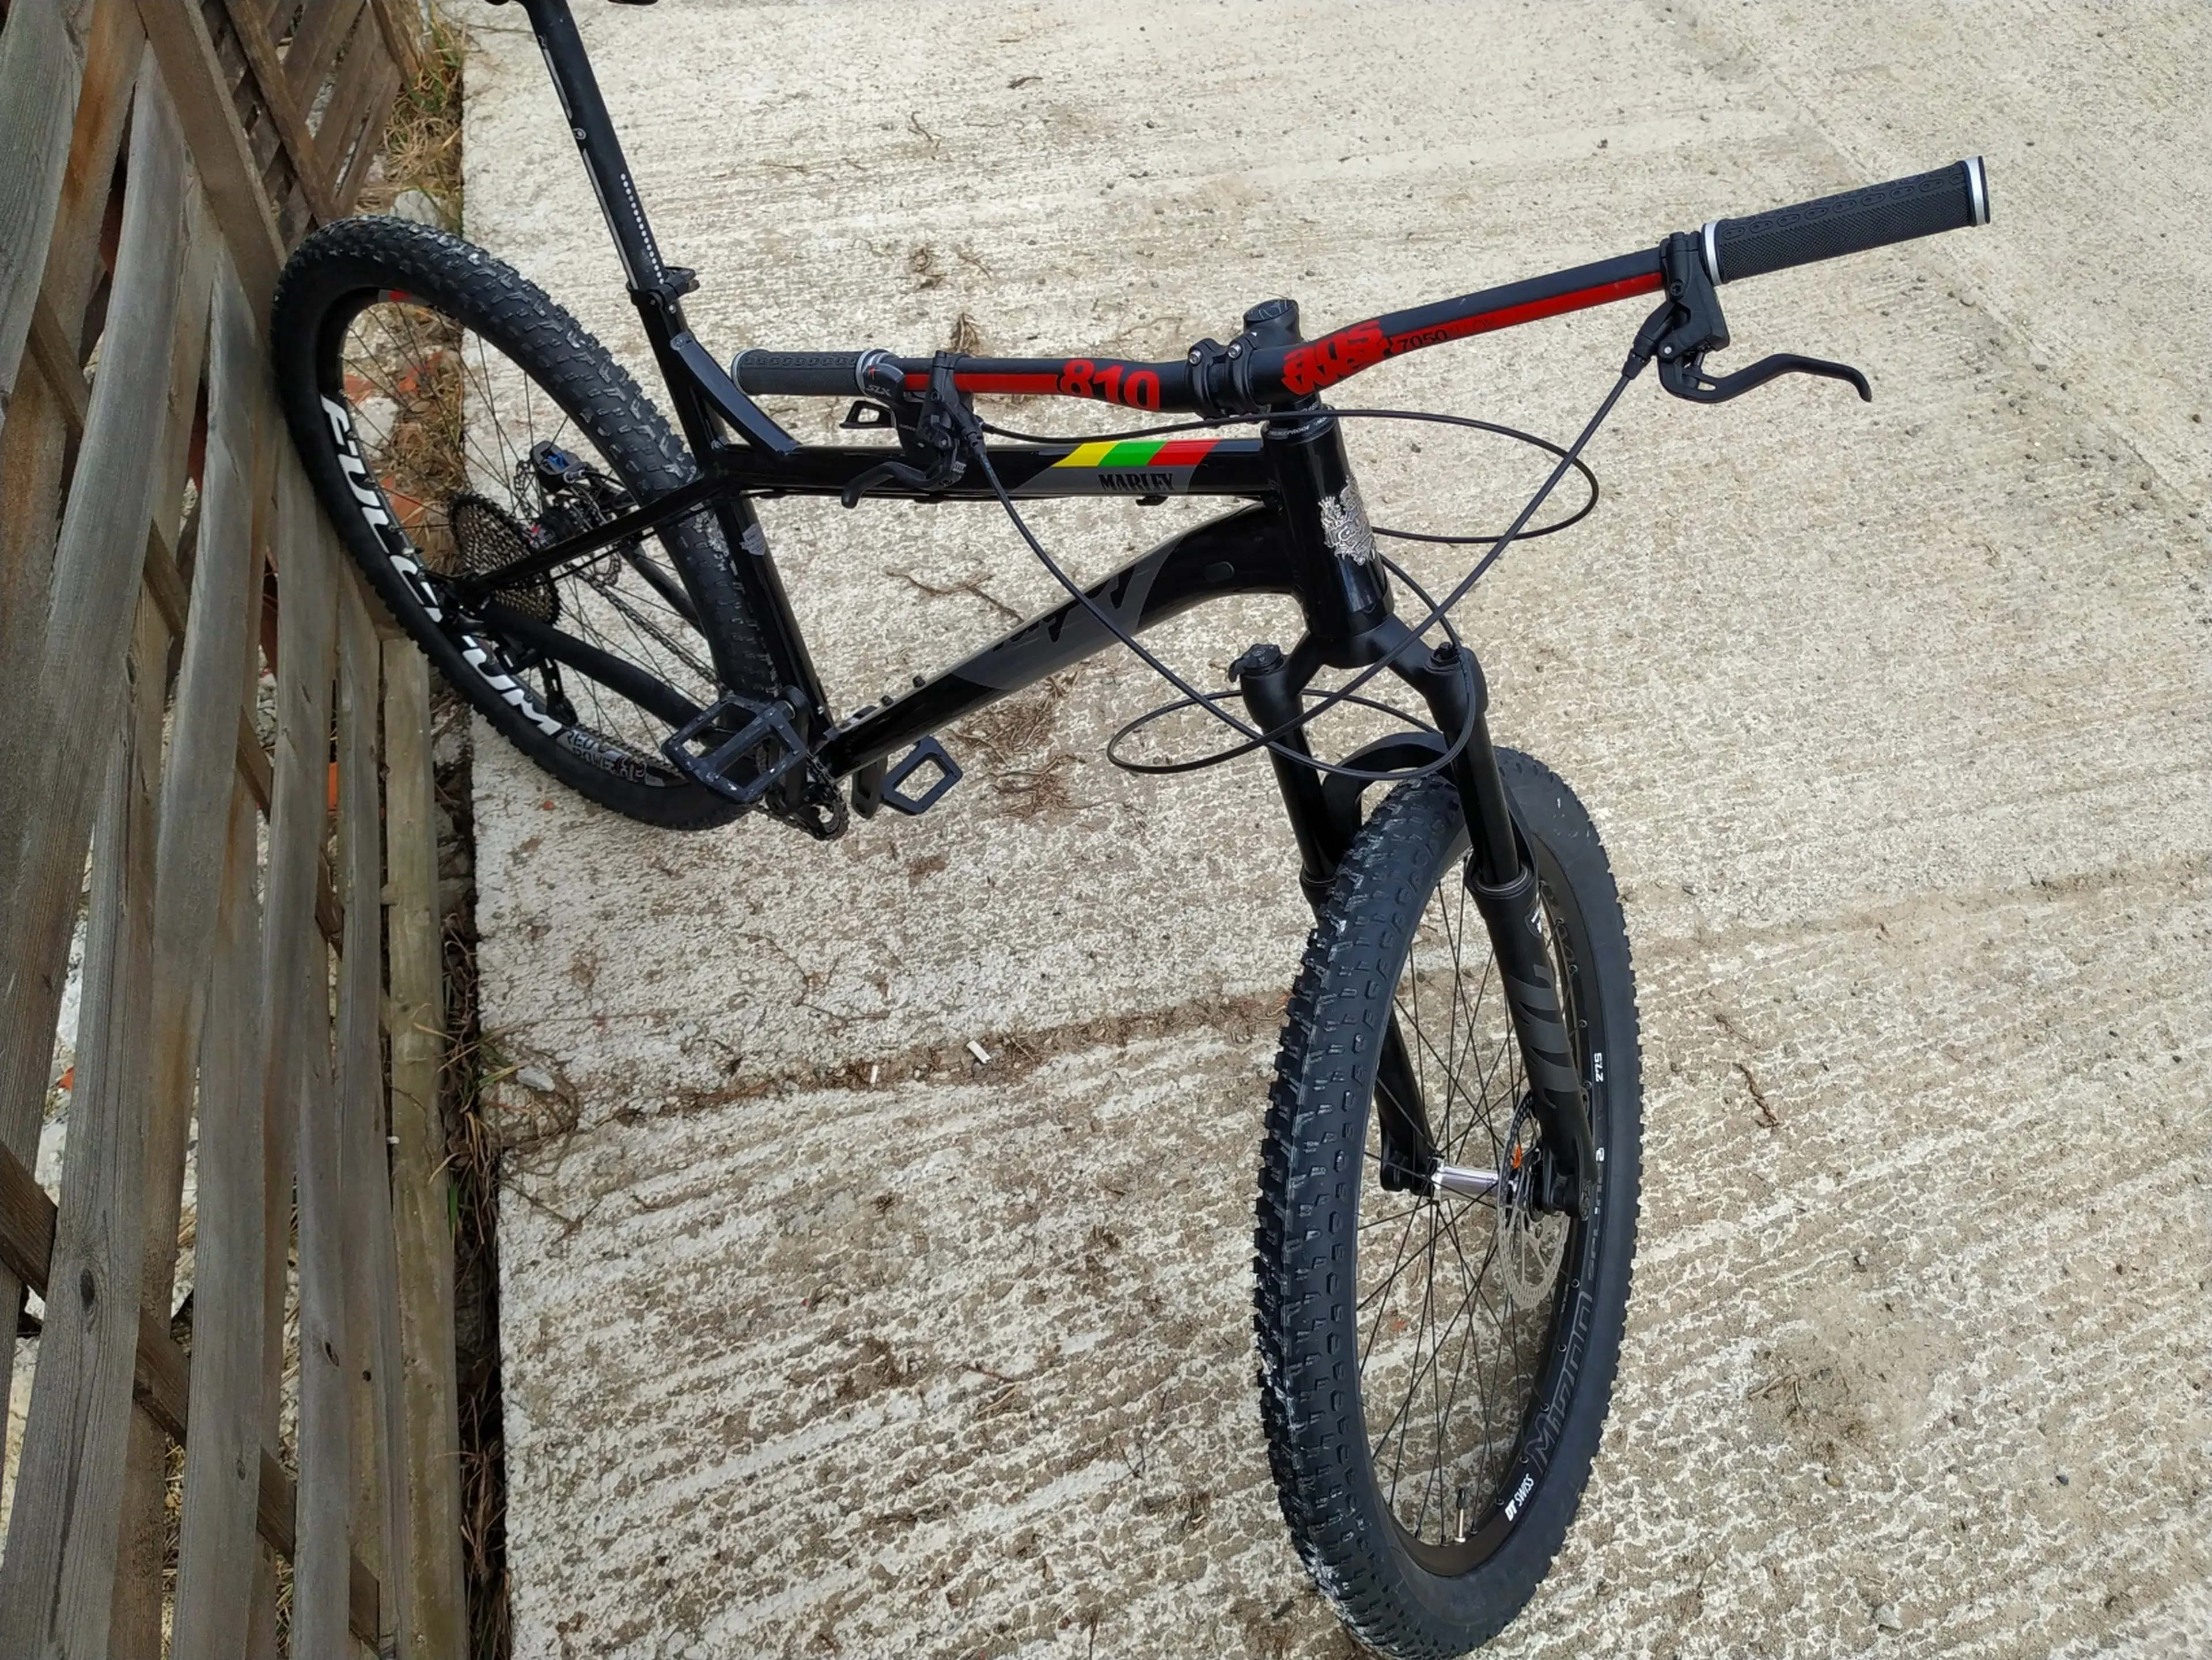 4. Bicicleta NOUA Ragley Marley 27.5" - XL, furca aer Manitou, Shimano XT